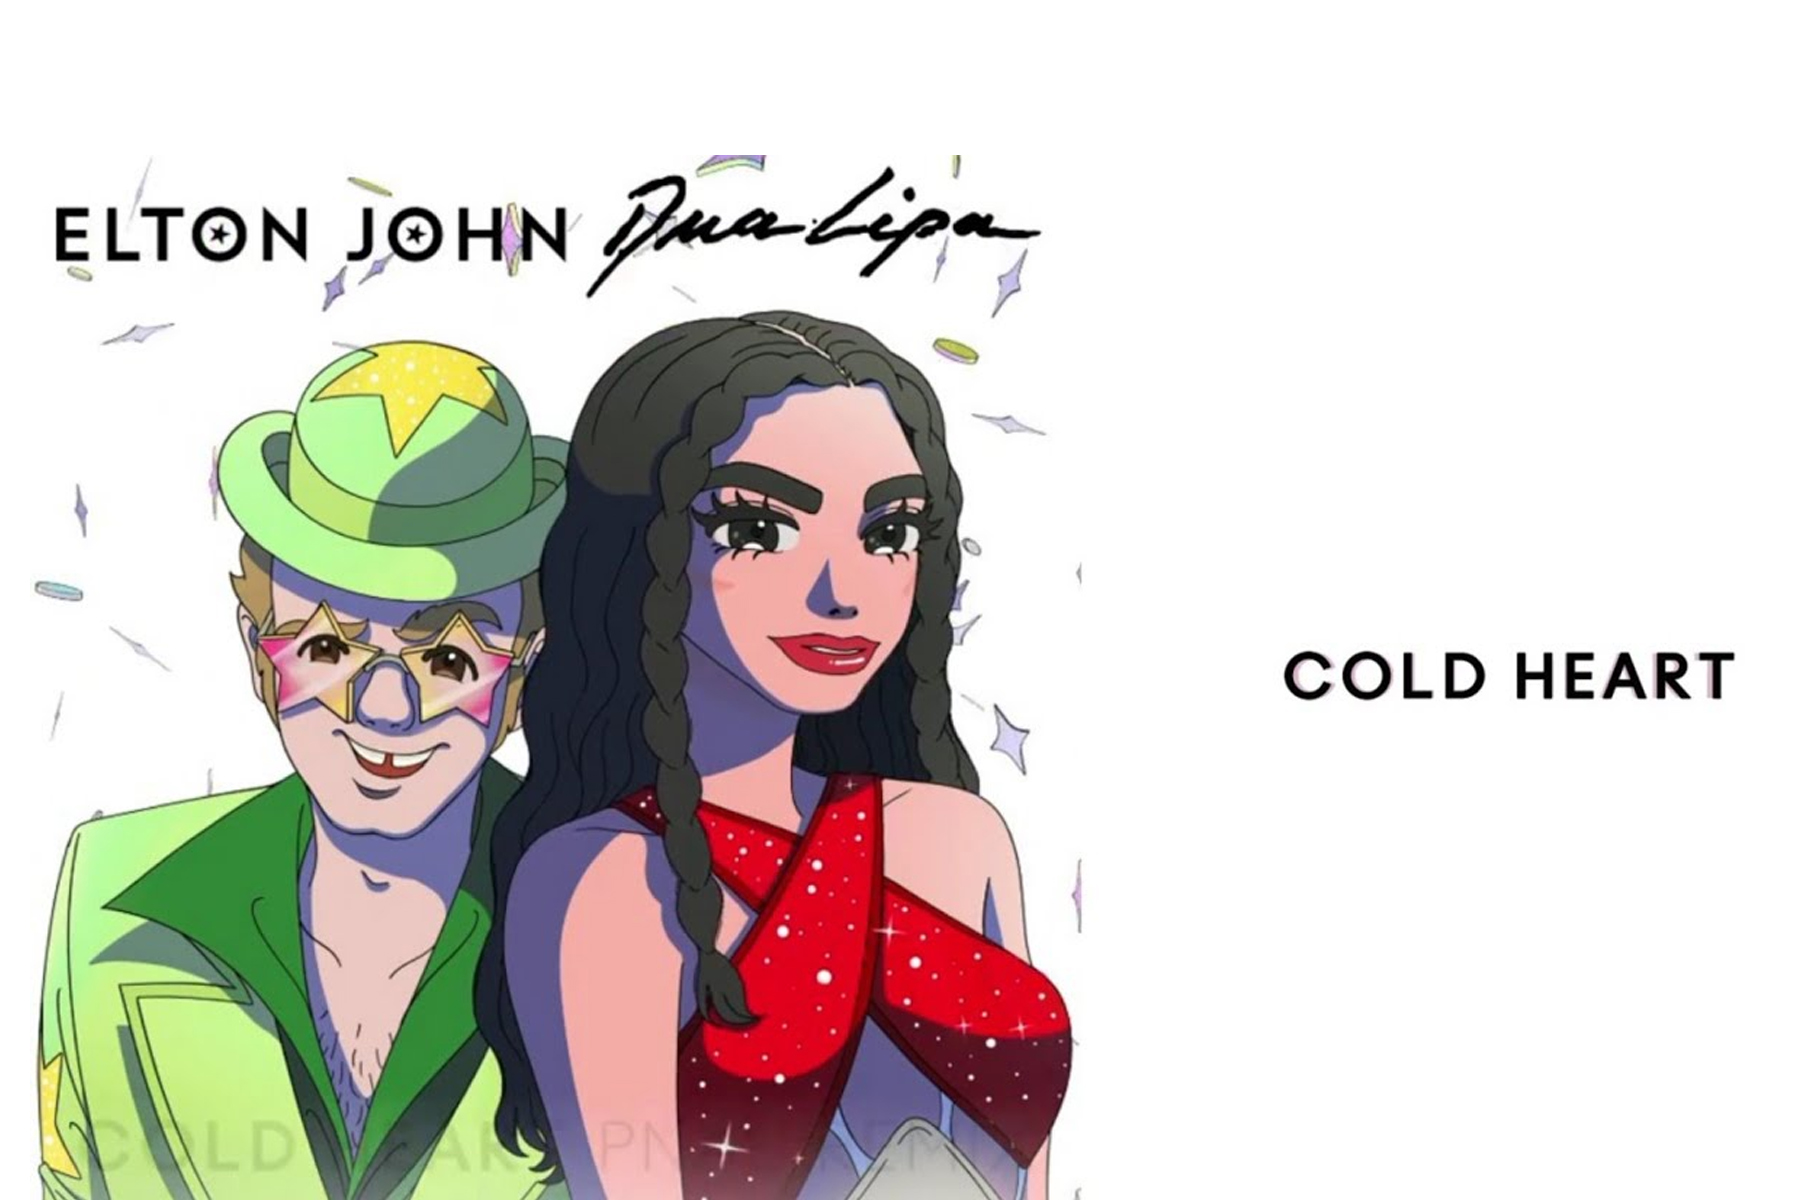 Элтон джон и дуа липа песня. Elton John Dua Lipa Cold Heart. Элтон Джон и Дуа липа. Elton John, Dua Lipa - Cold Heart (Pnau Remix). Cold Heart Элтон Джон.